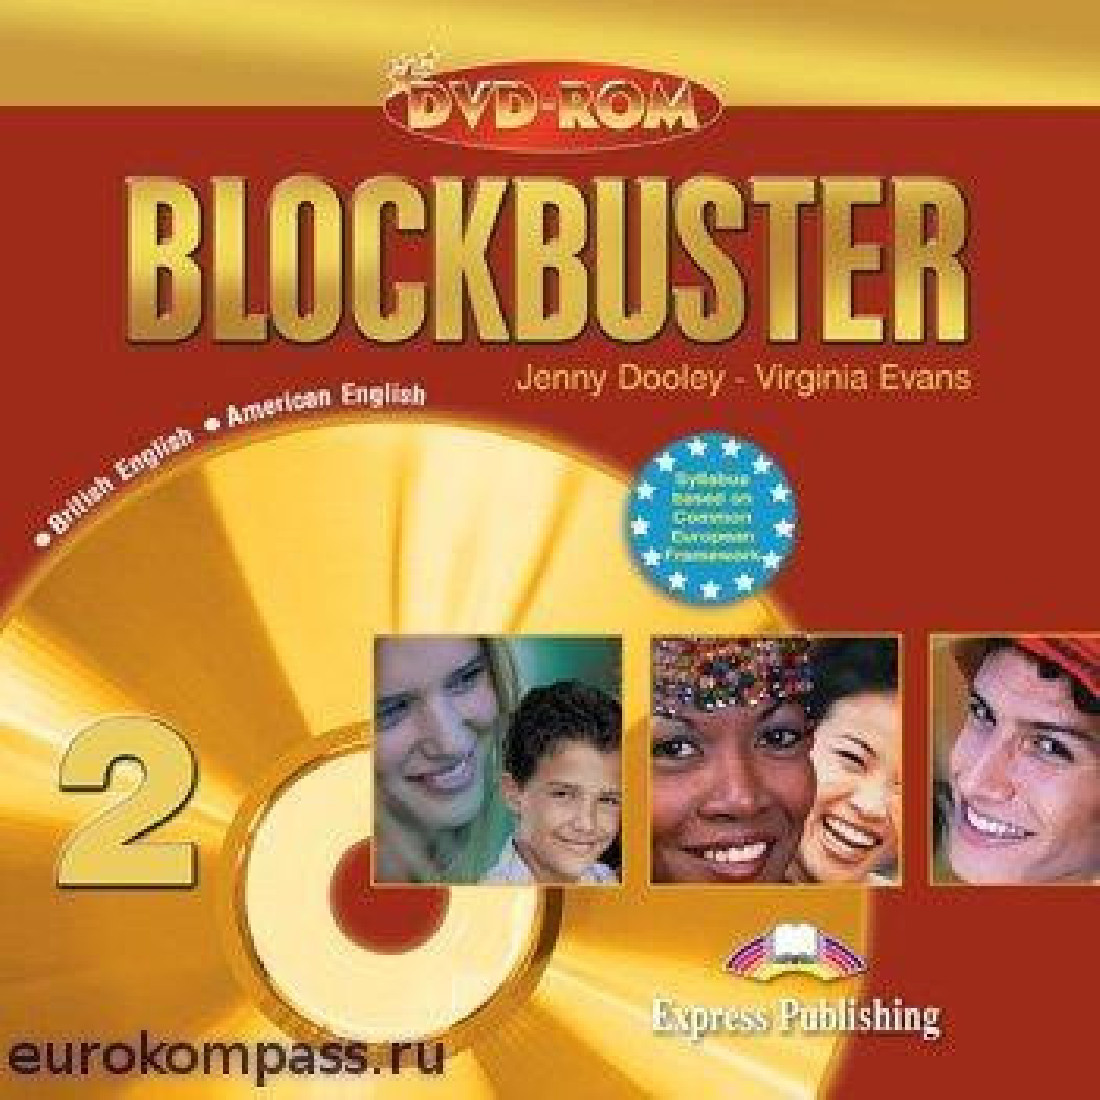 BLOCKBUSTER 2 DVD ROM (BRITISH ENGLISH-AMERICAN ENGLISH)